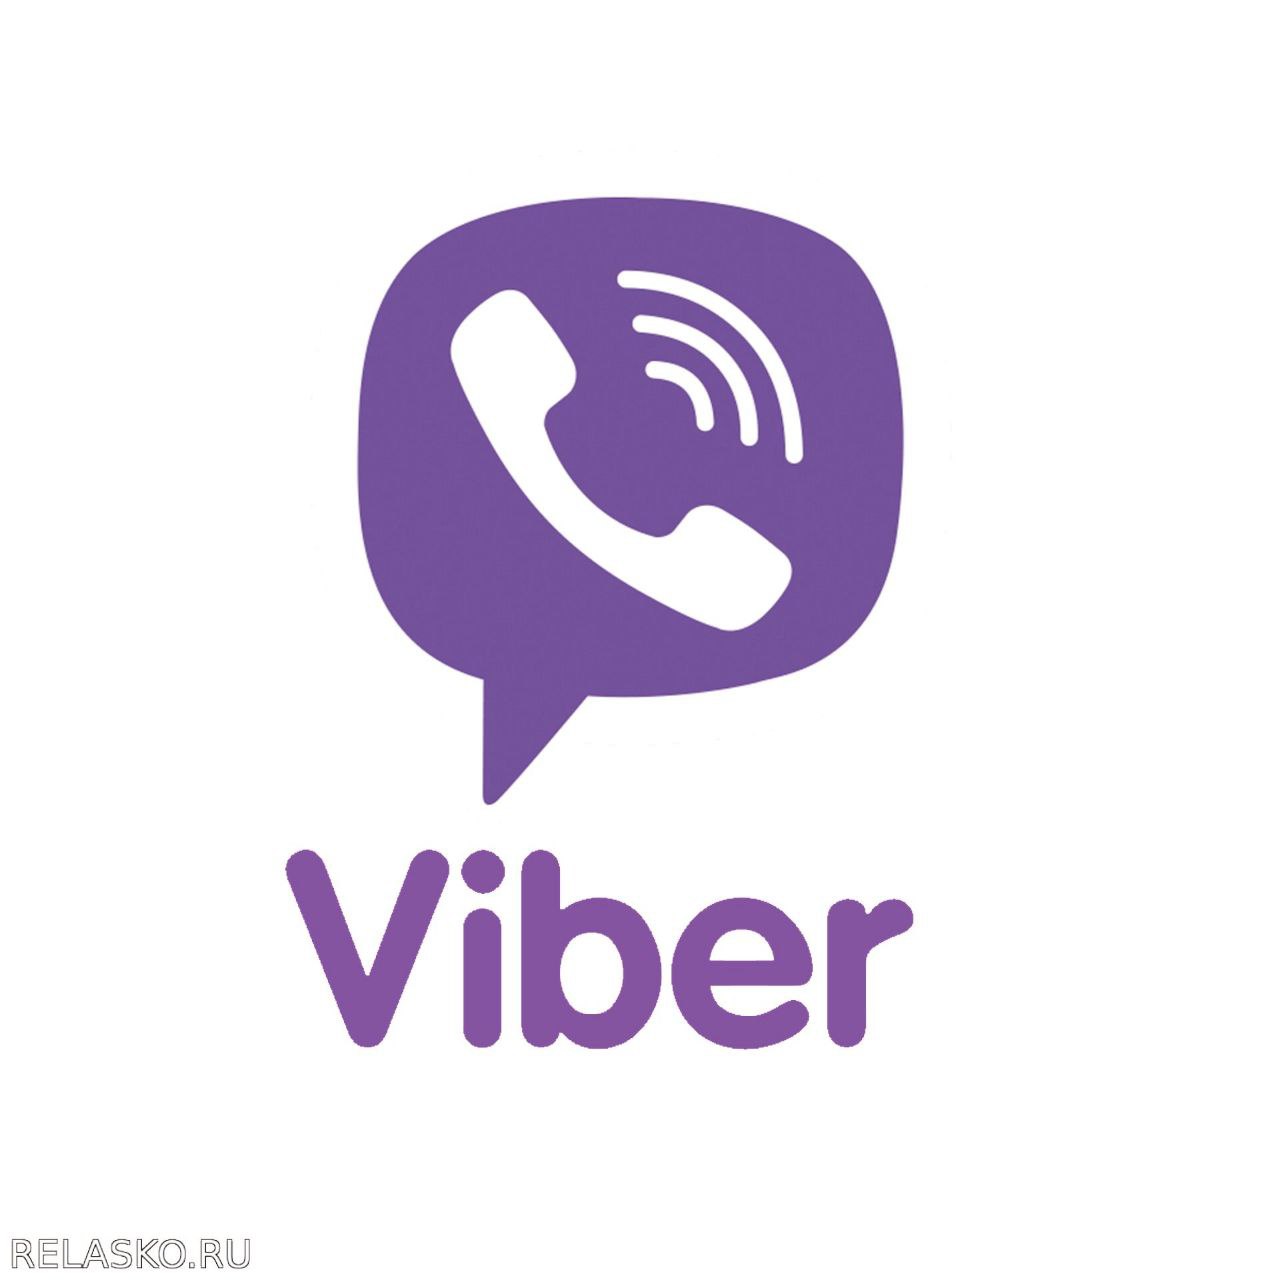 Viber год. Viber логотип. Икона Viber. Значок вибер на прозрачном фоне. Значок вайбер ватсап.